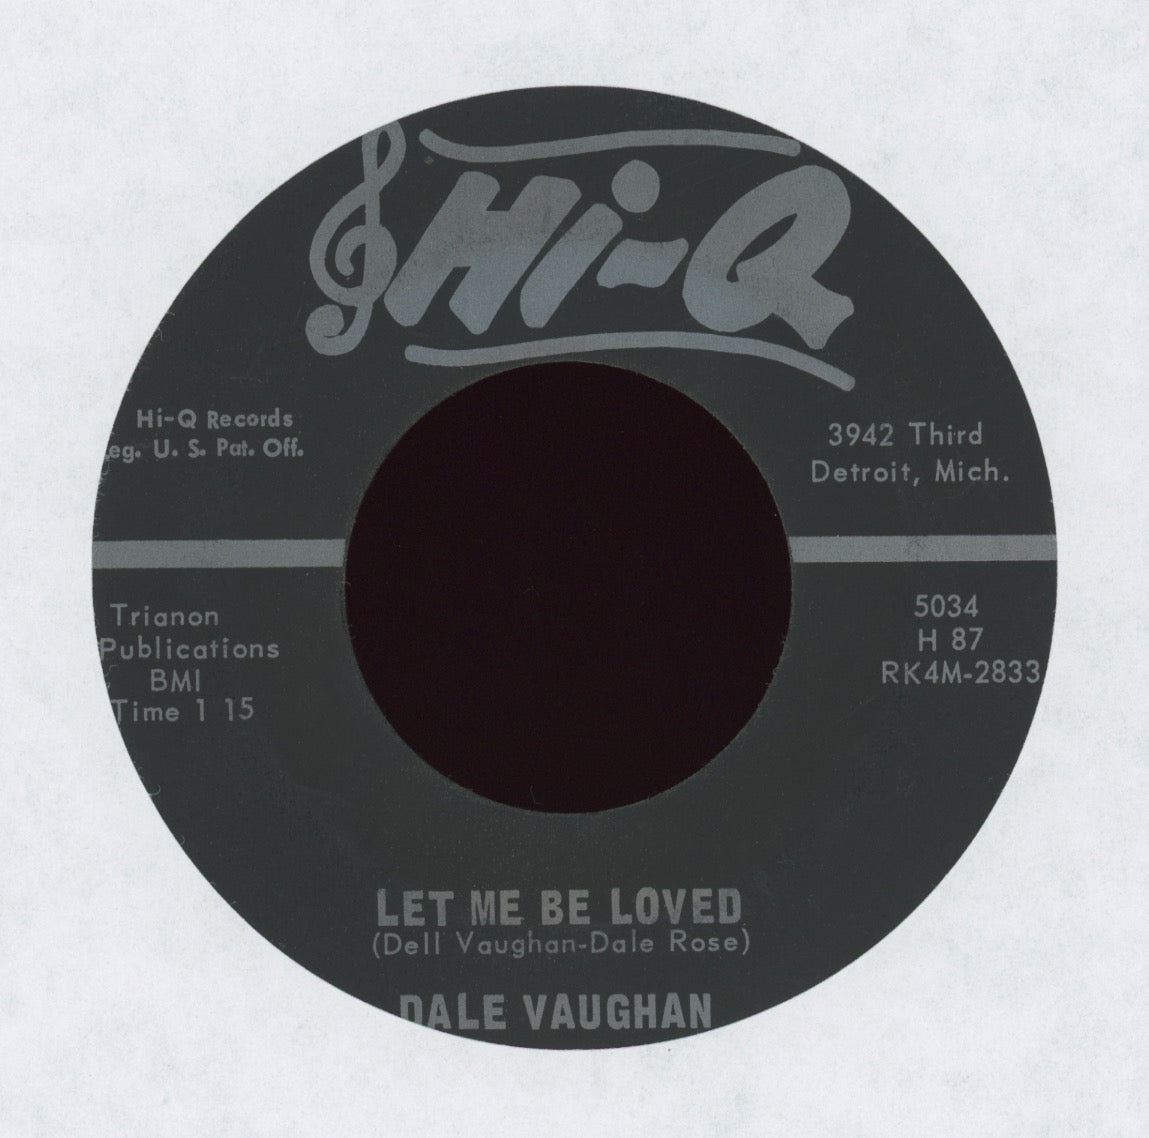 Dale Vaughan - Let Me Be Loved on Hi-Q